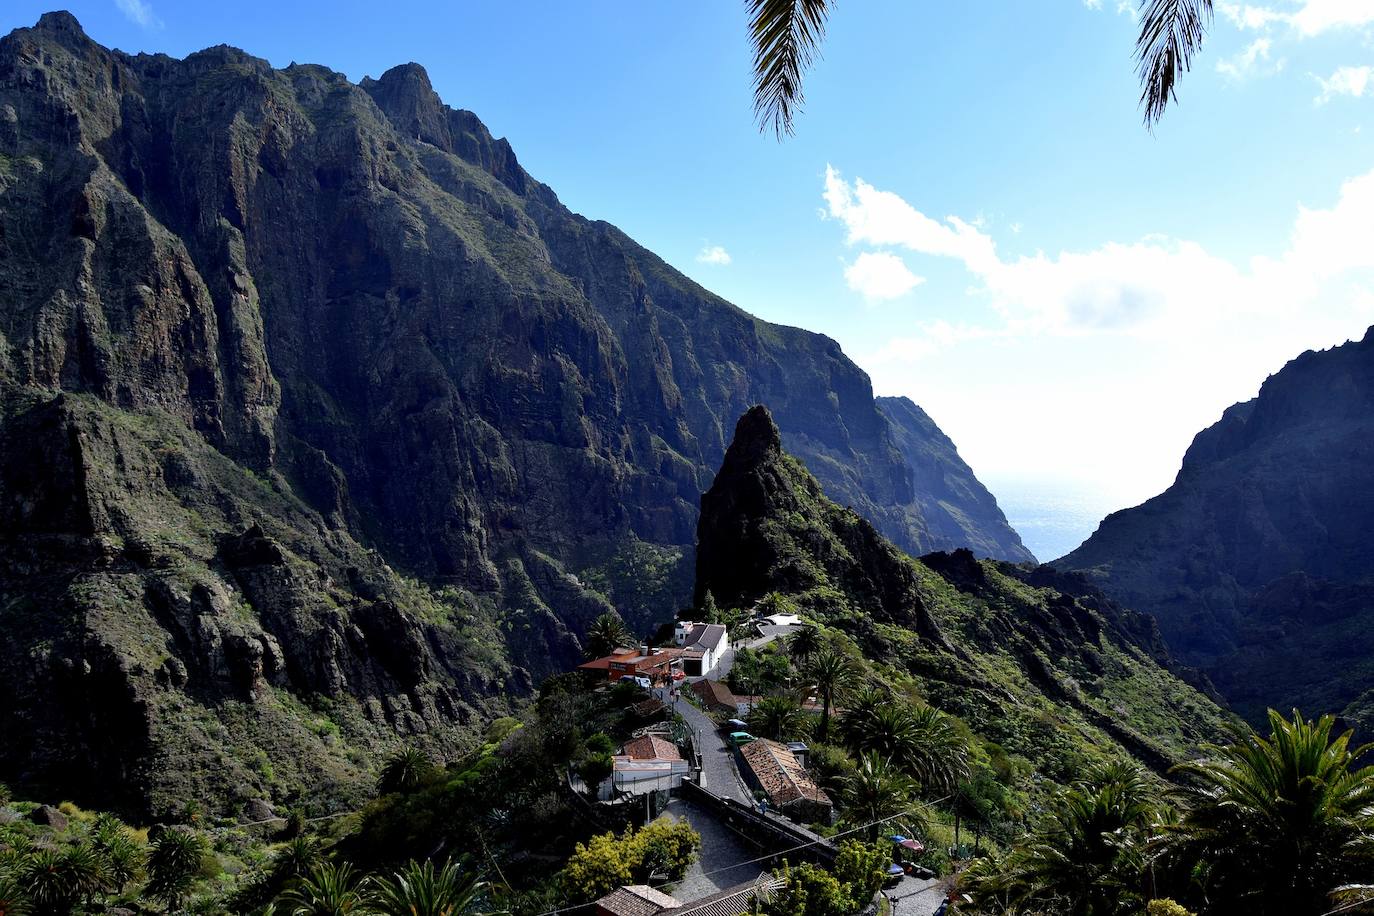 Masca (Tenerife) | Masca es una aldea encaramada en lo alto de un risco del parque natural del Teno, rodeado de montañas y que sirve de puerta de entrada al barranco de Masca. Por su situación y la belleza del entorno se le ha hermanado con Machu Picchu. 